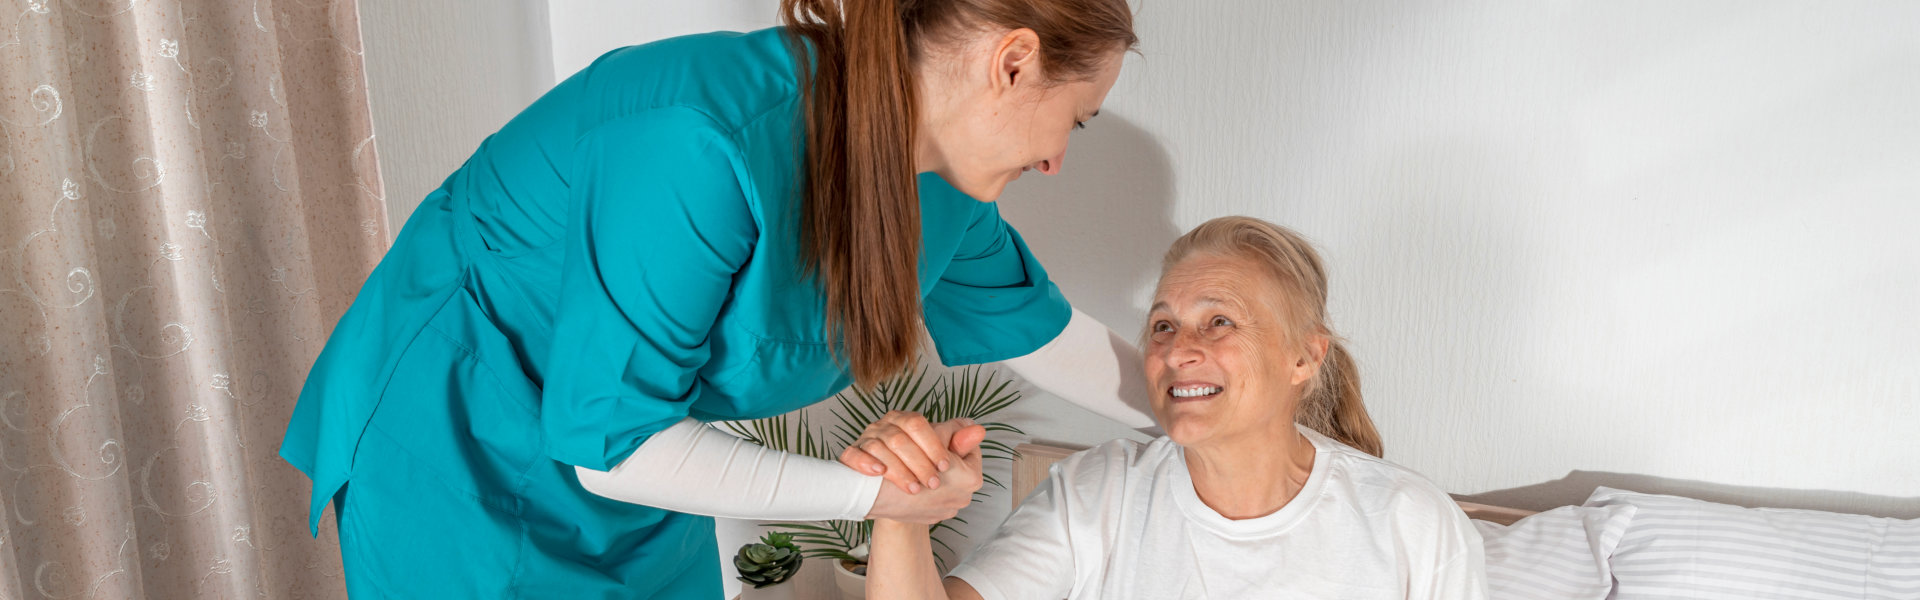 Caregiver assisting elderly